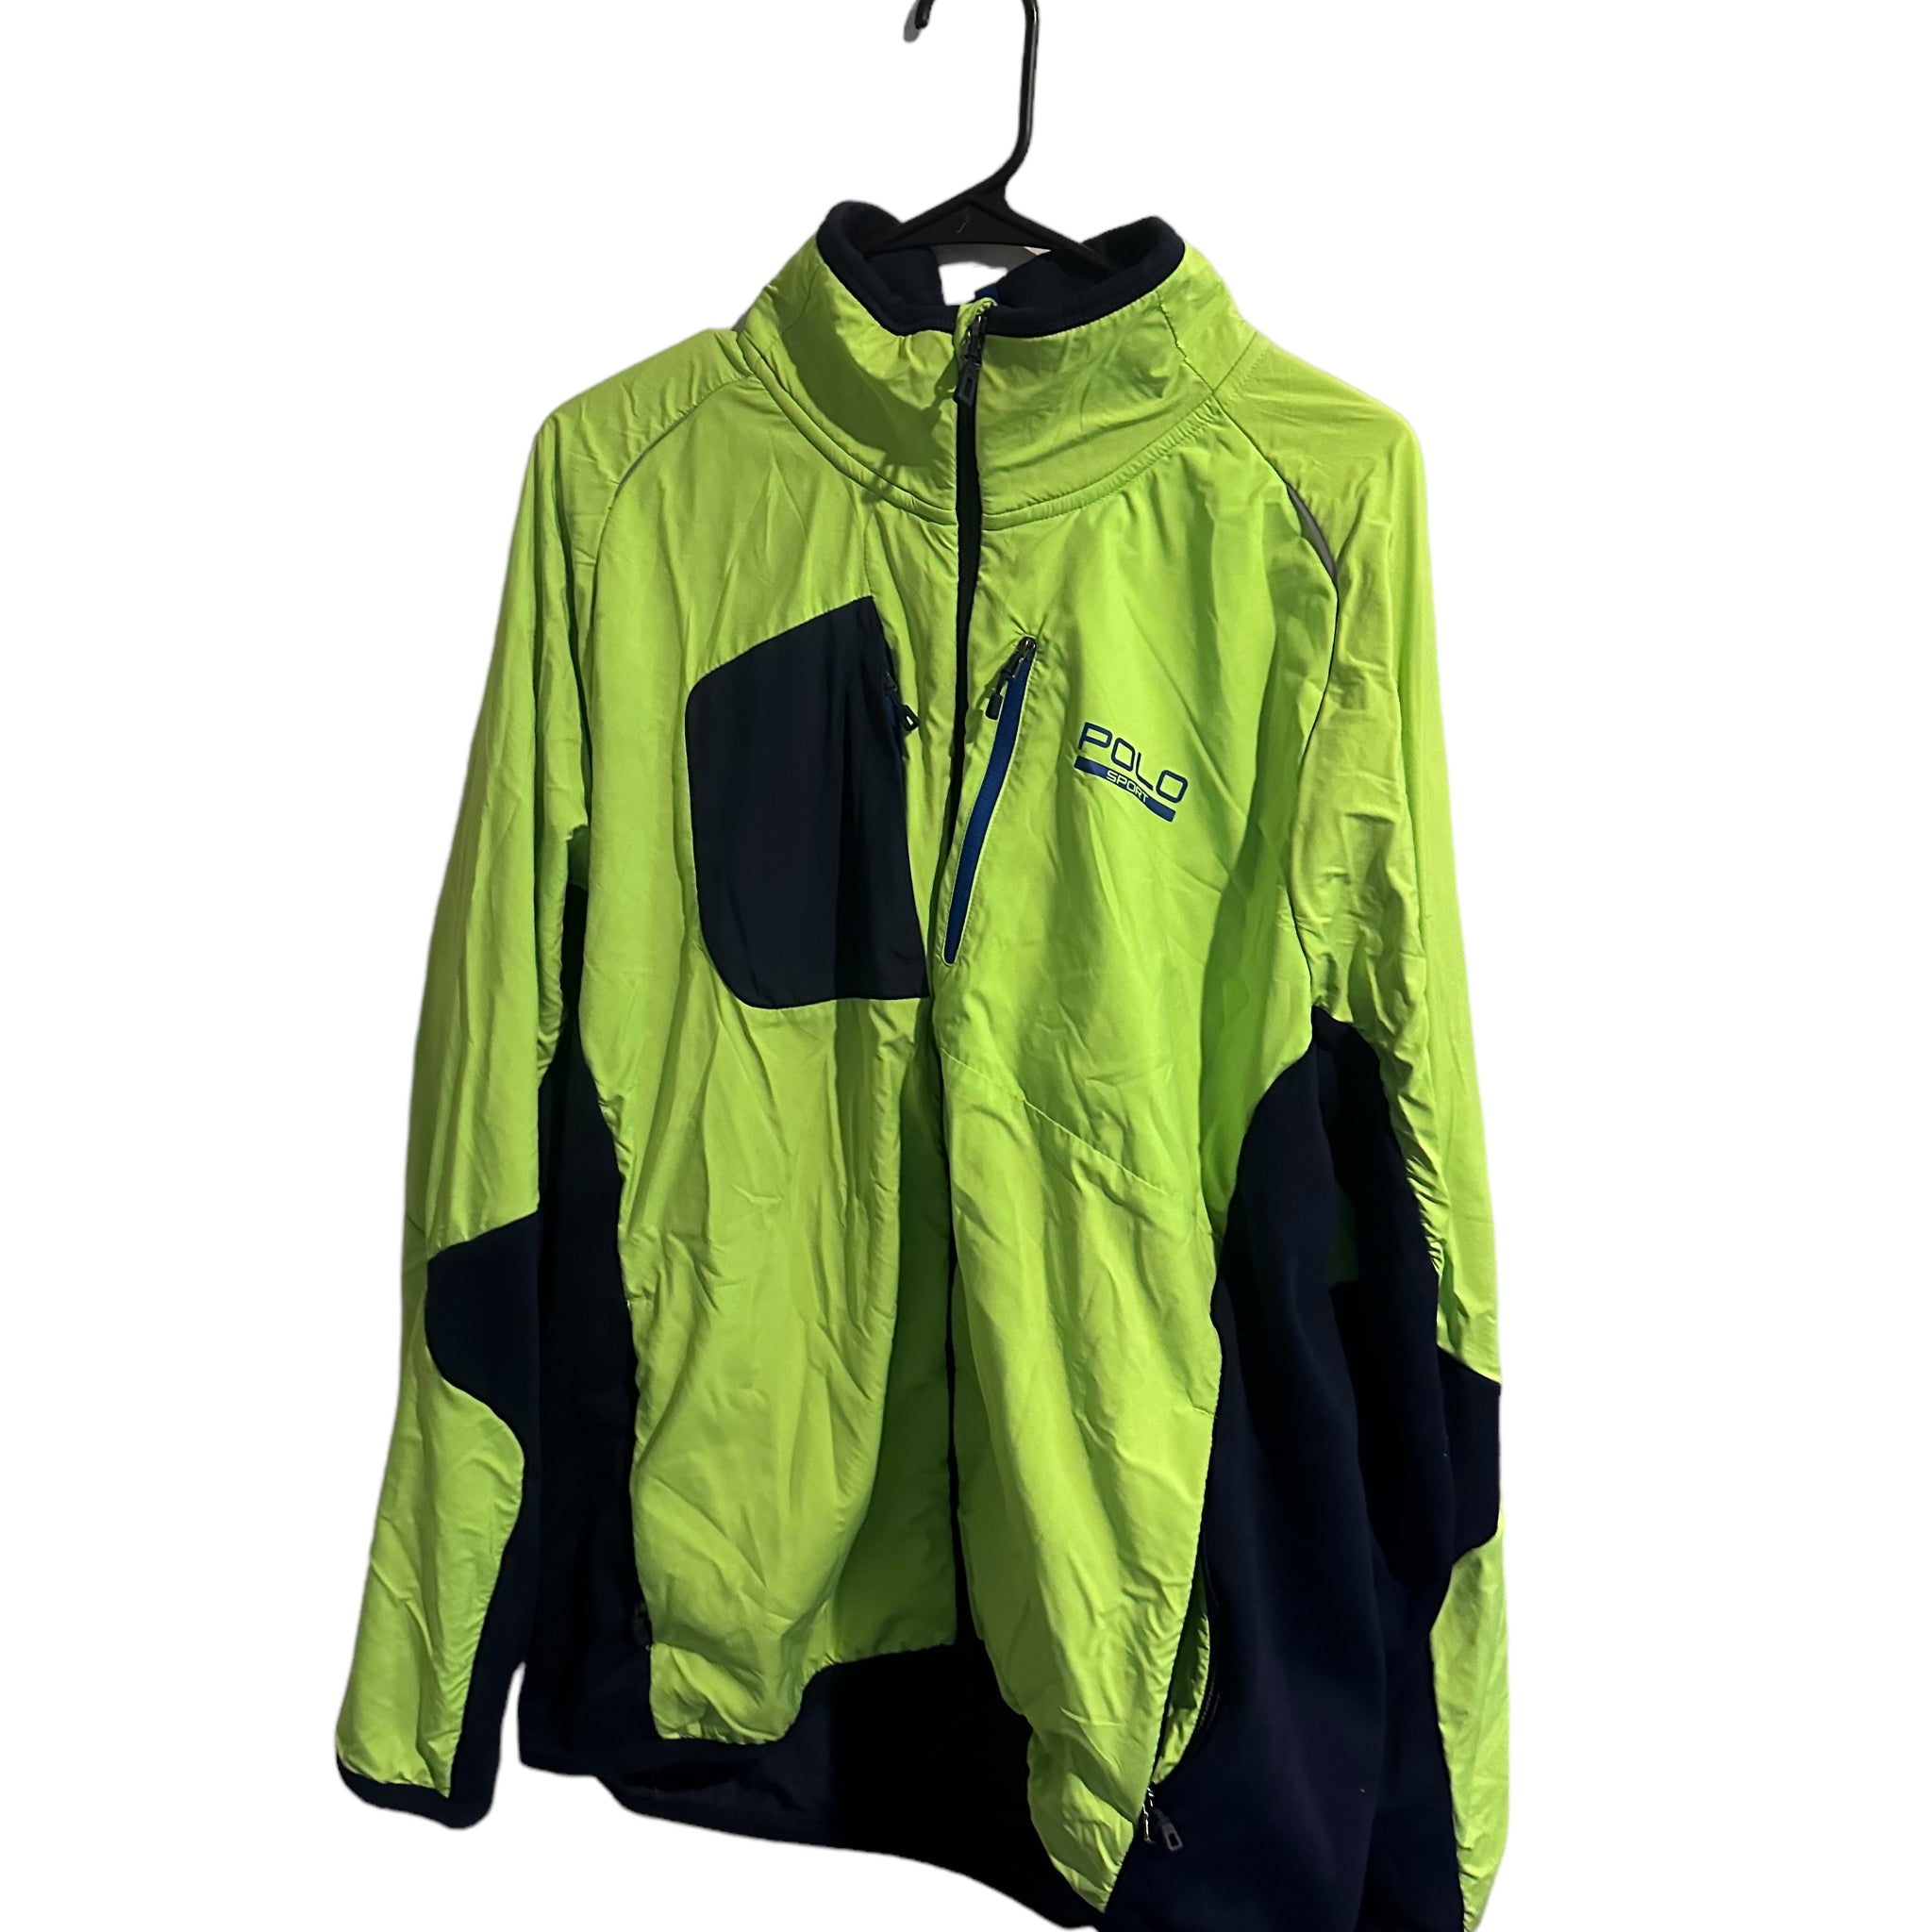 Polo Sport Ralph Lauren Men's Full Zip Up Fleece Jacket Size xxl neon green